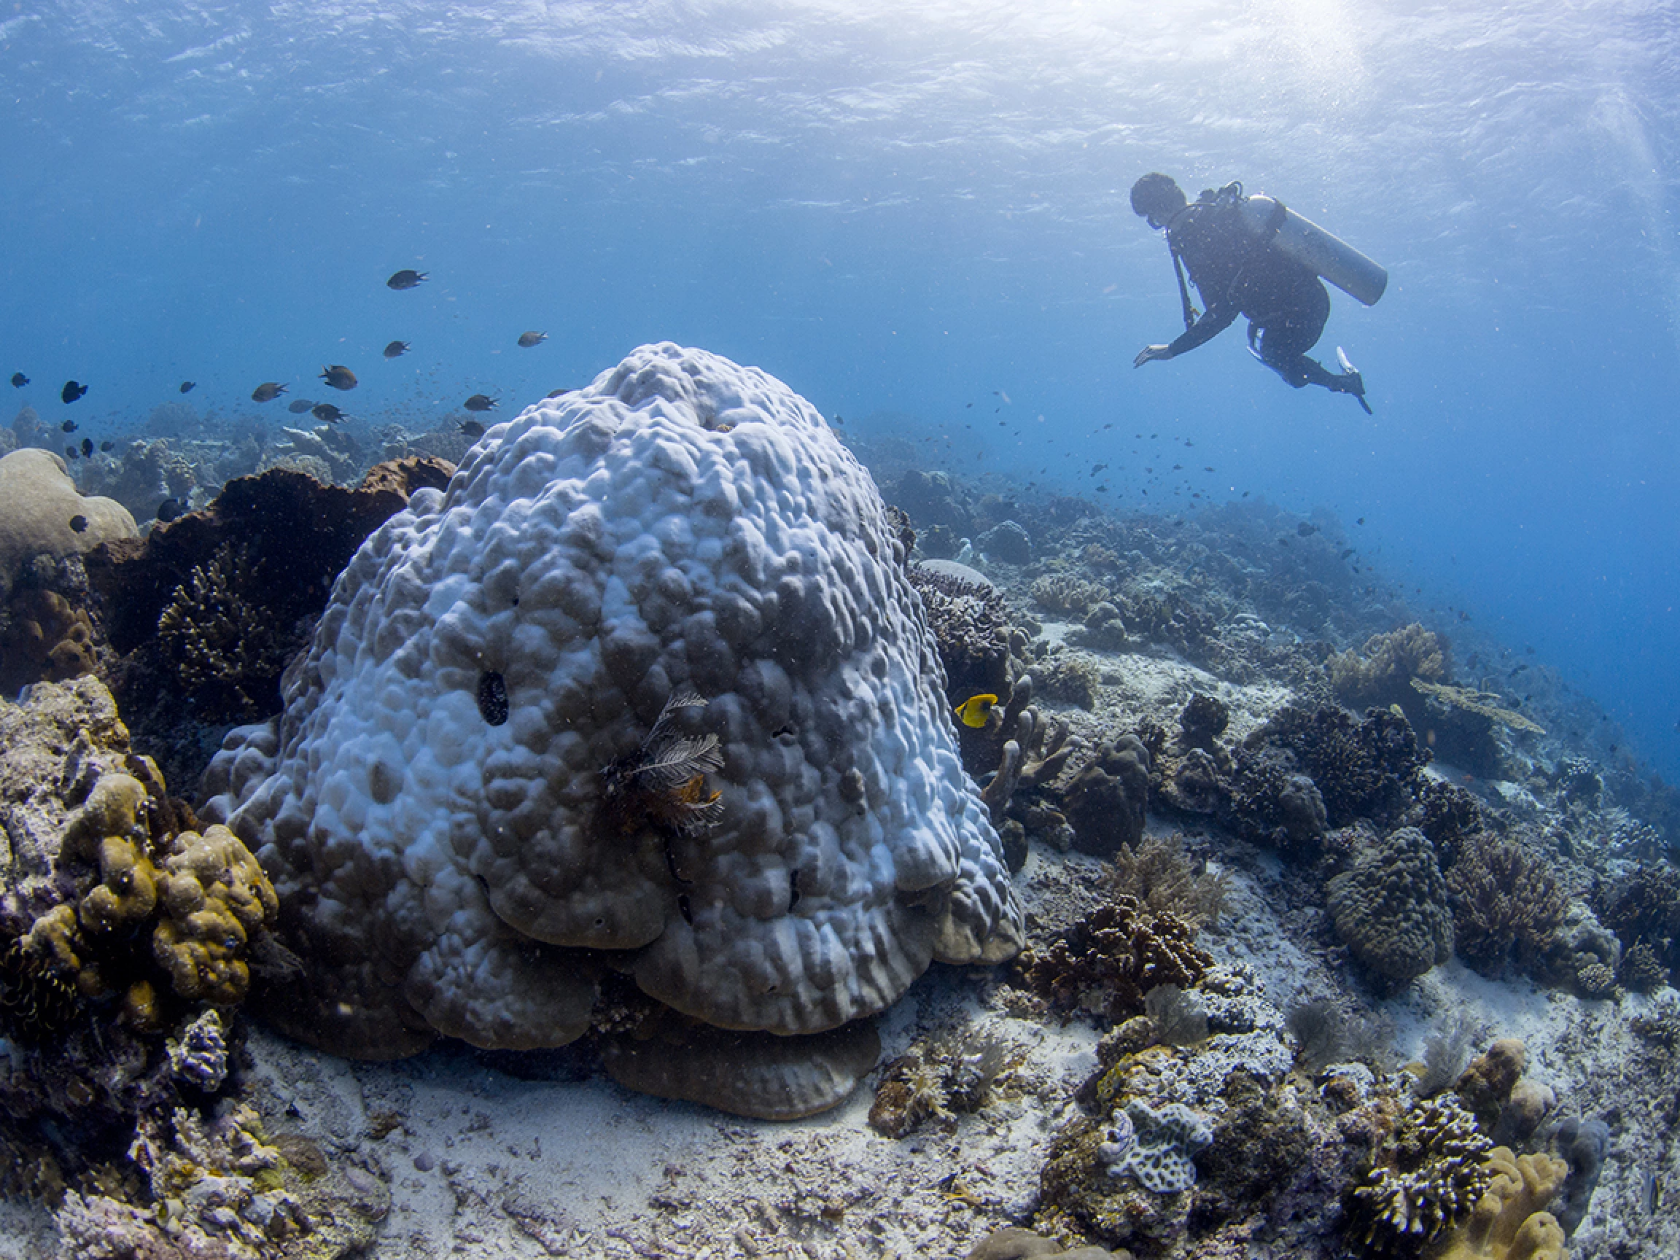 研究发现微生物群移植能够帮助脆弱的珊瑚对抗热应激反应